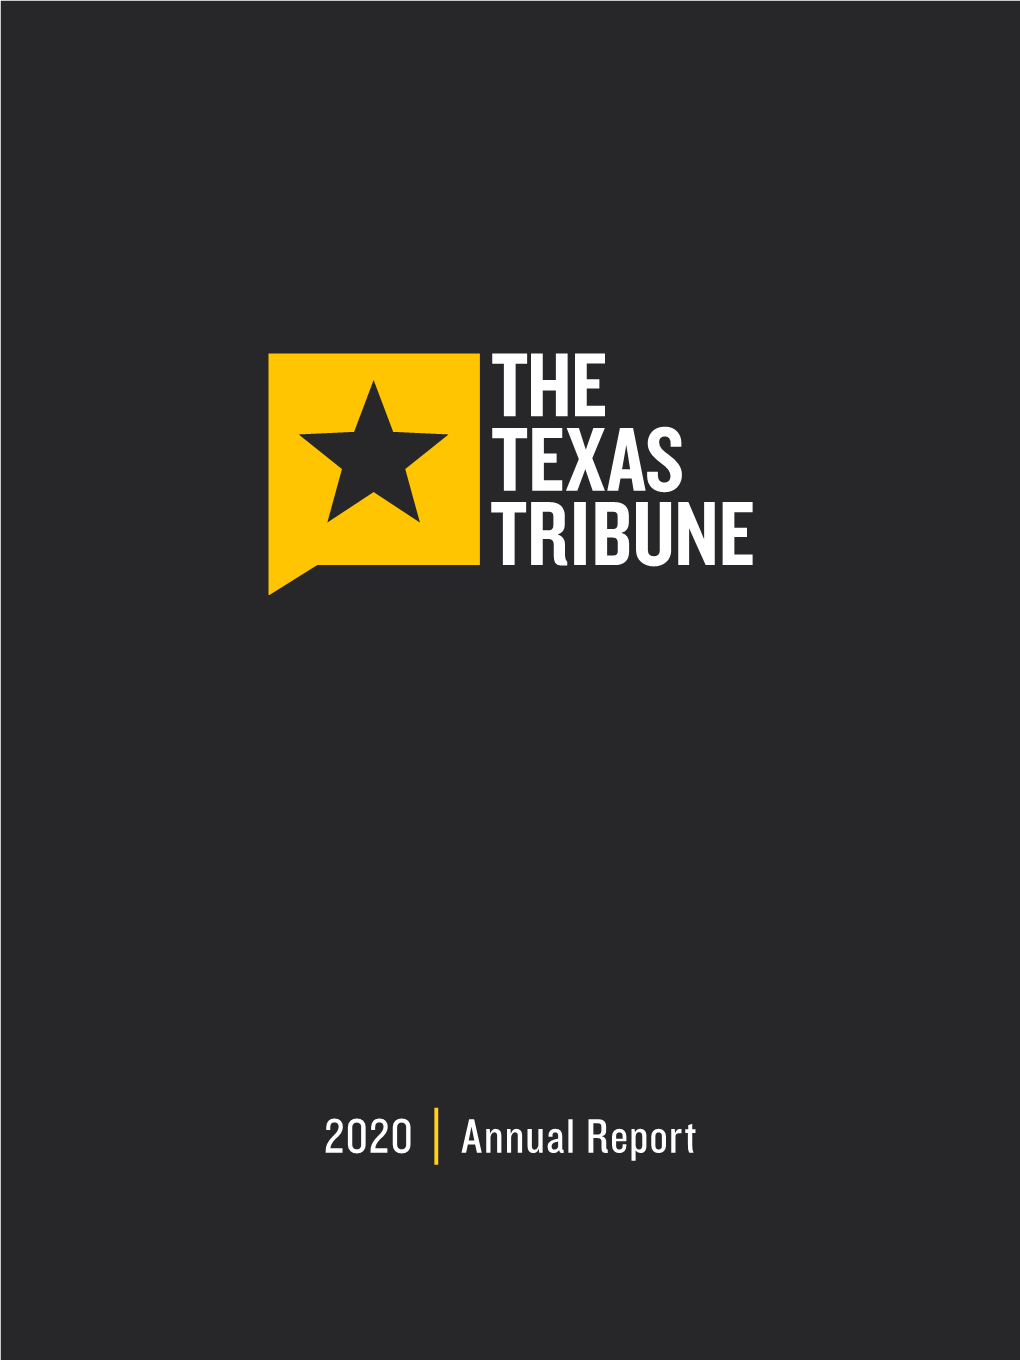 Texas Tribune 2020 Annual Report